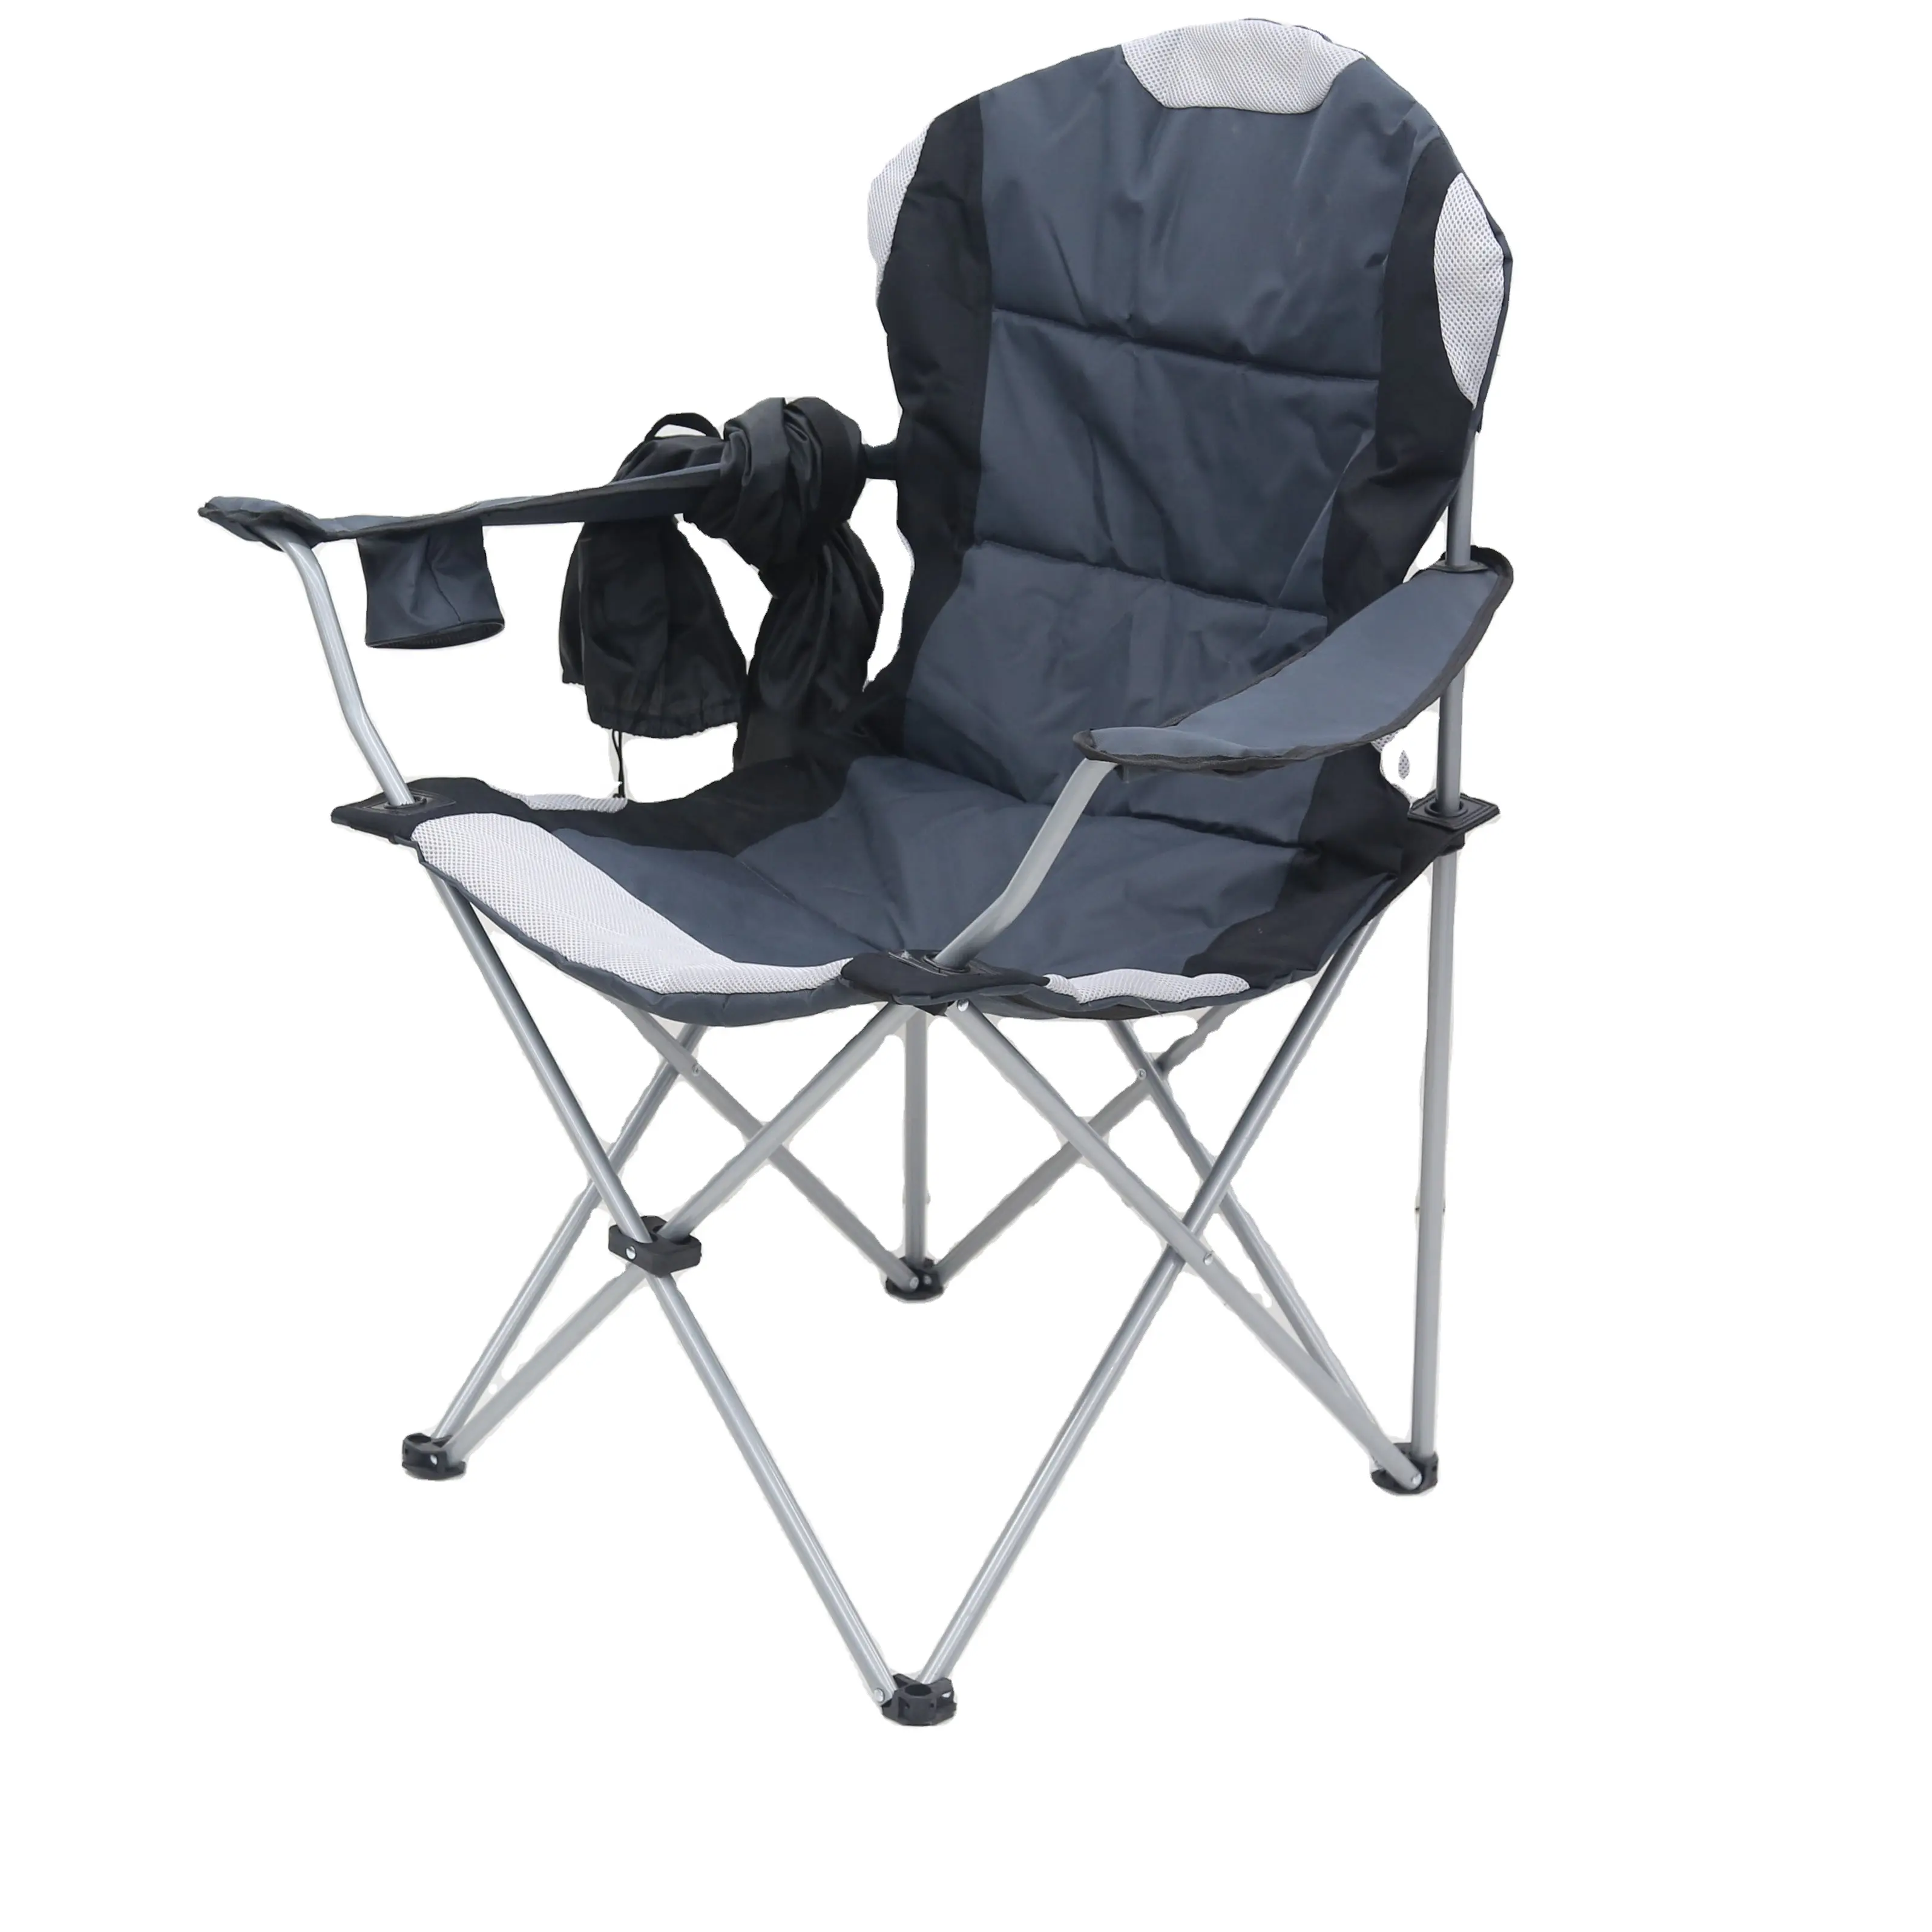 DC-8005 temizleme taşınabilir dayanıklı piknik balıkçılık yürüyüş kamp sandalyesi Ultralight